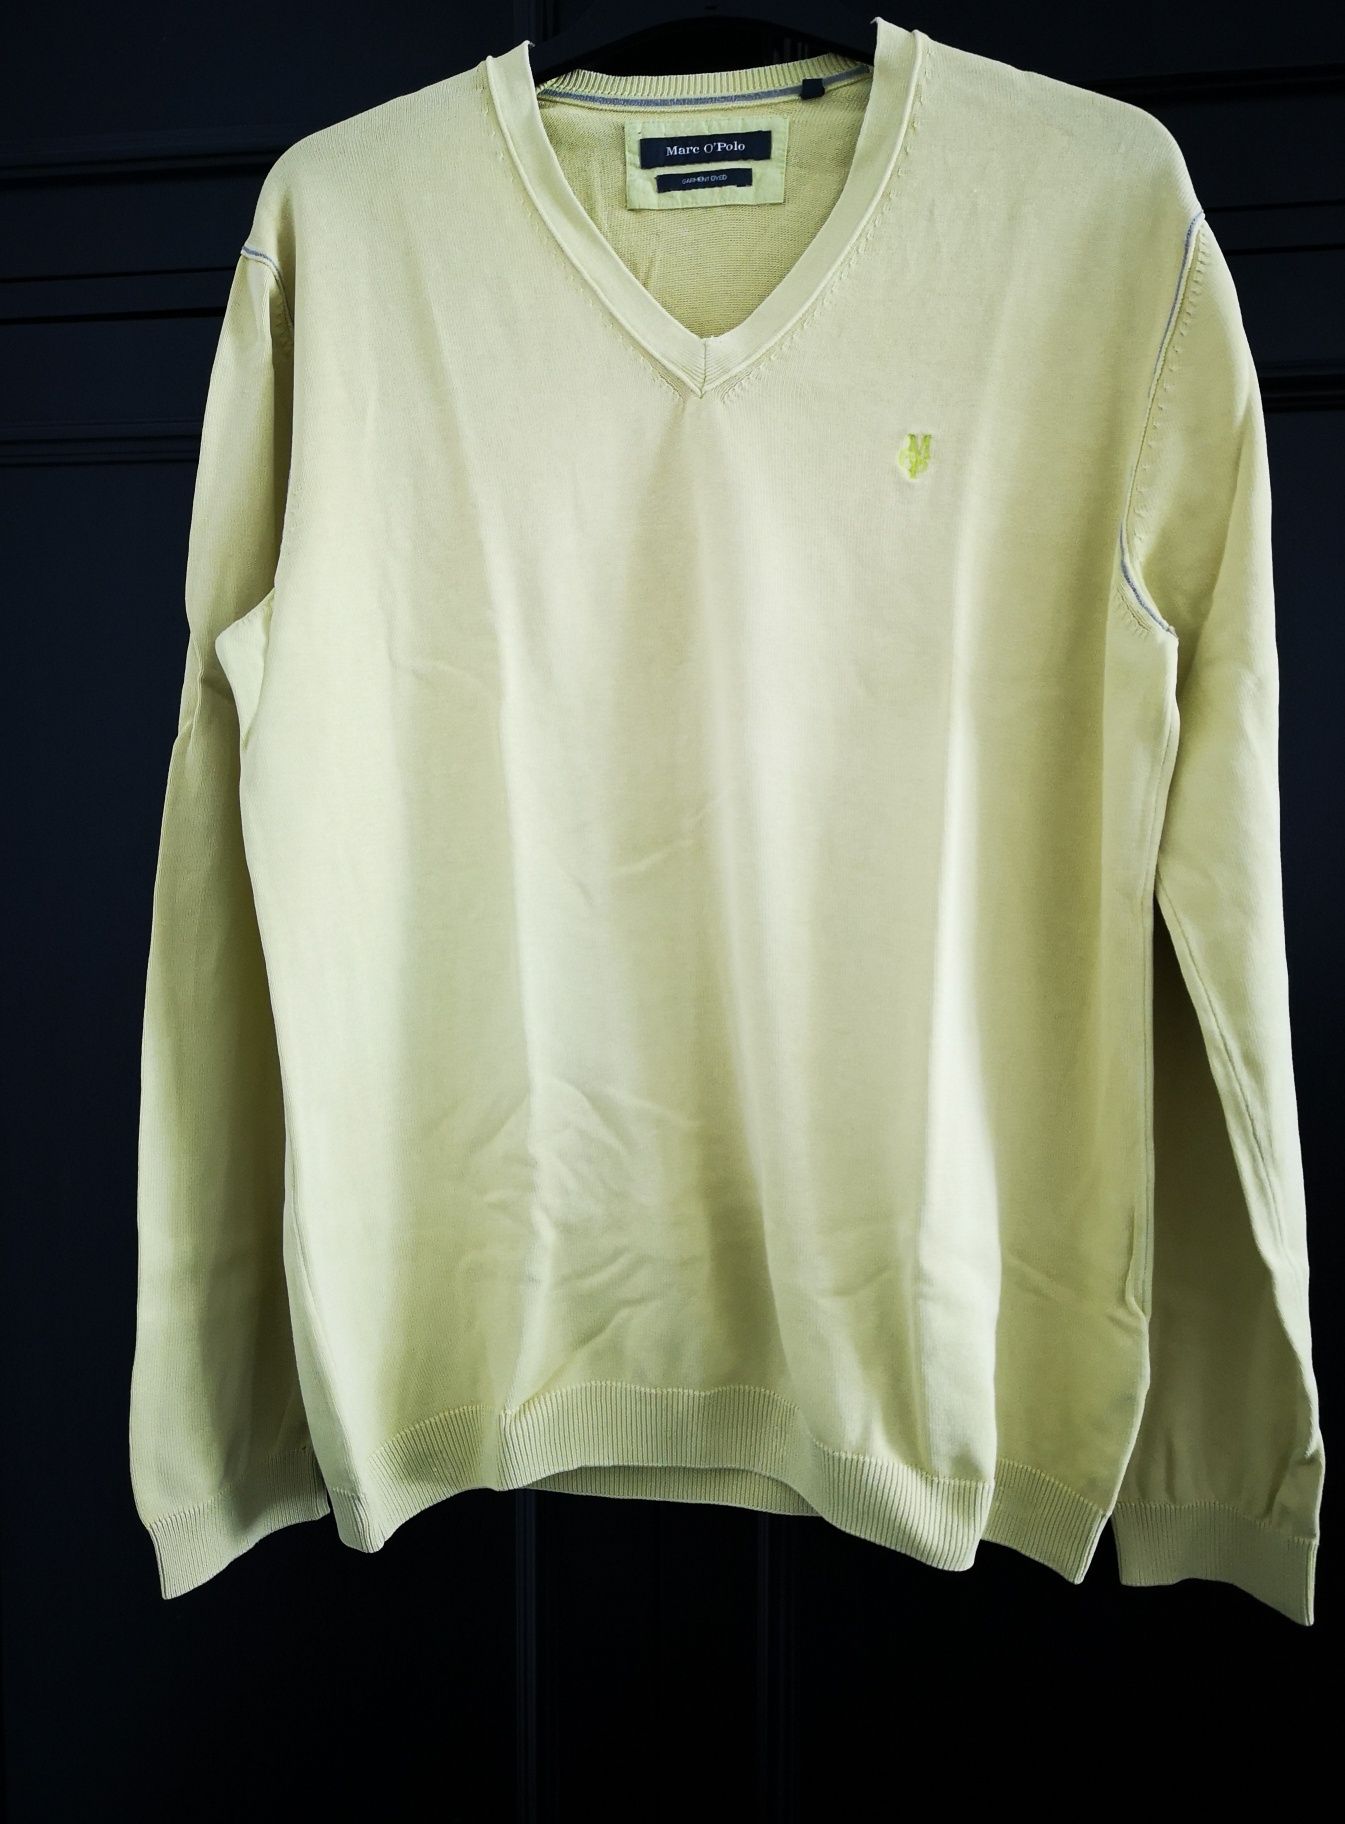 Żółta bluzka Marc O'Polo r. L bawełna

Wymiary:
55 cm x 2 szerokość od